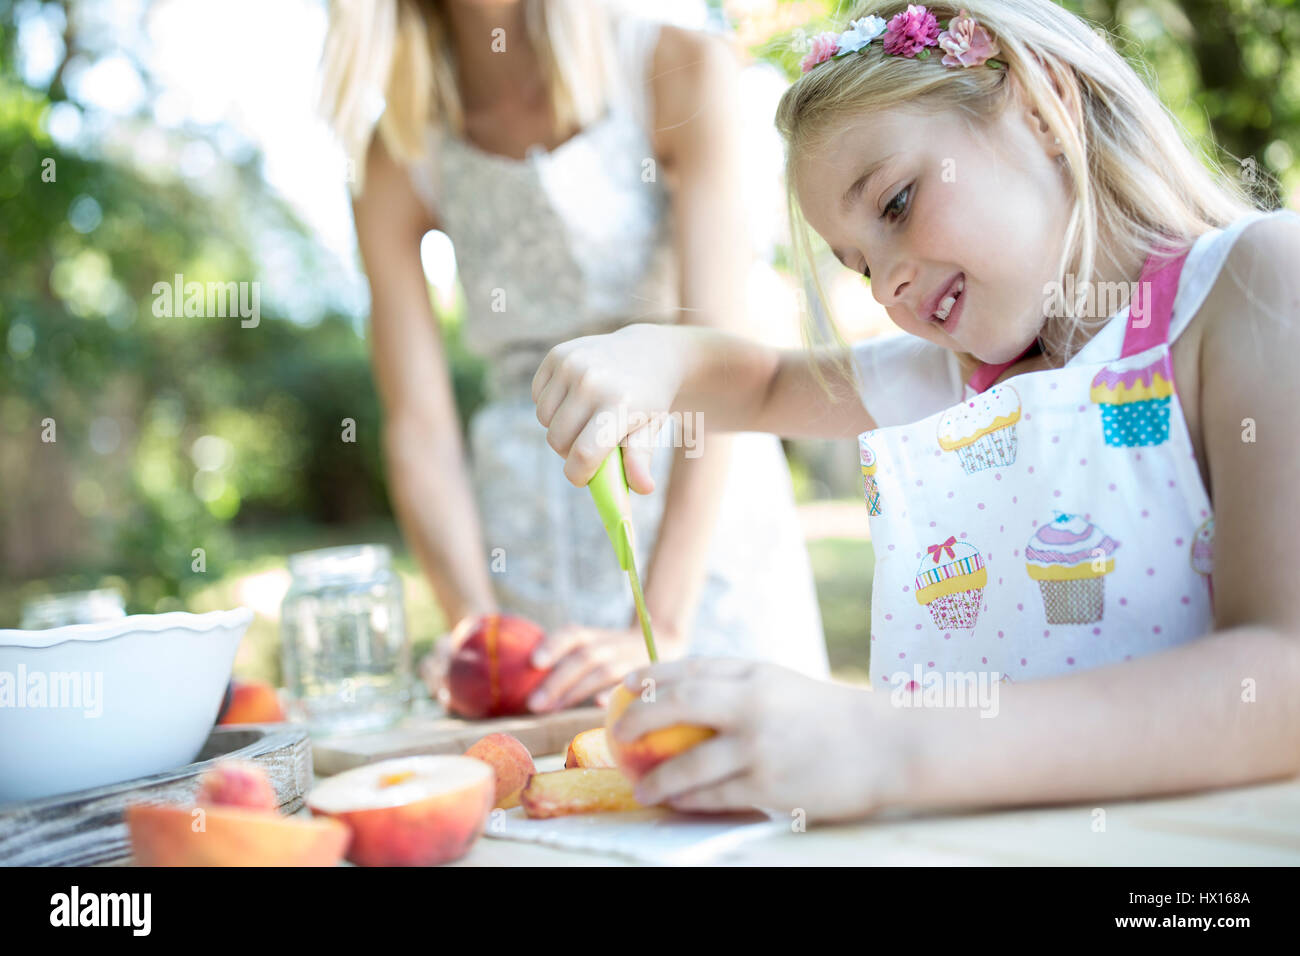 Girl preserving peaches at garden table Stock Photo